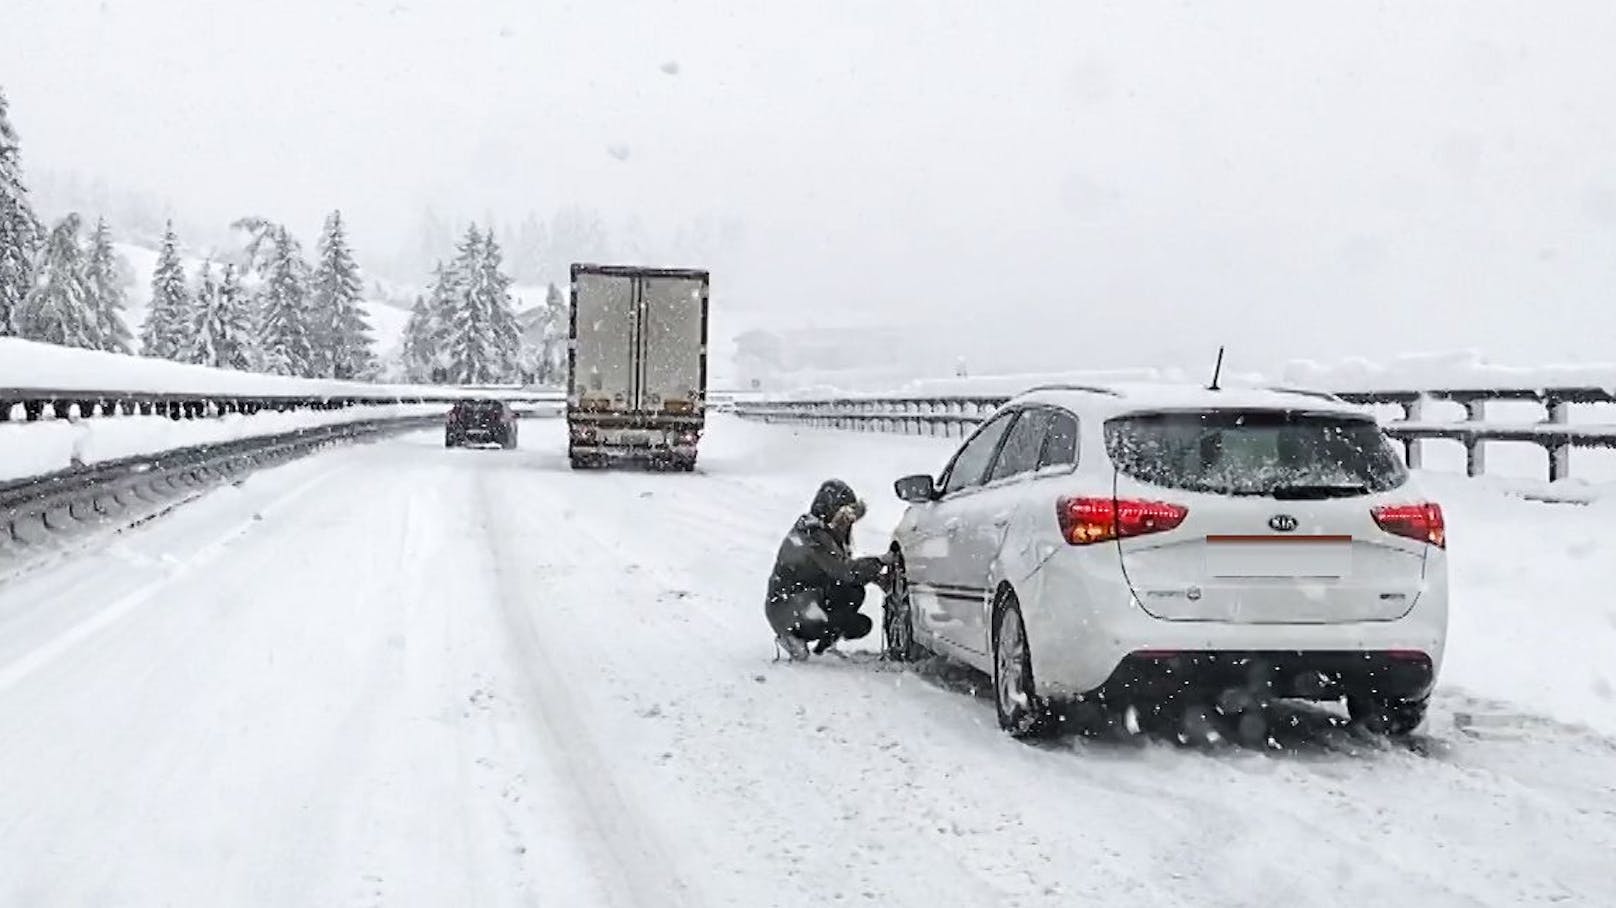 Aufgrund des starken Schneefalls sind bereits mehrere Fahrzeuge hängengeblieben (Symbolbild)